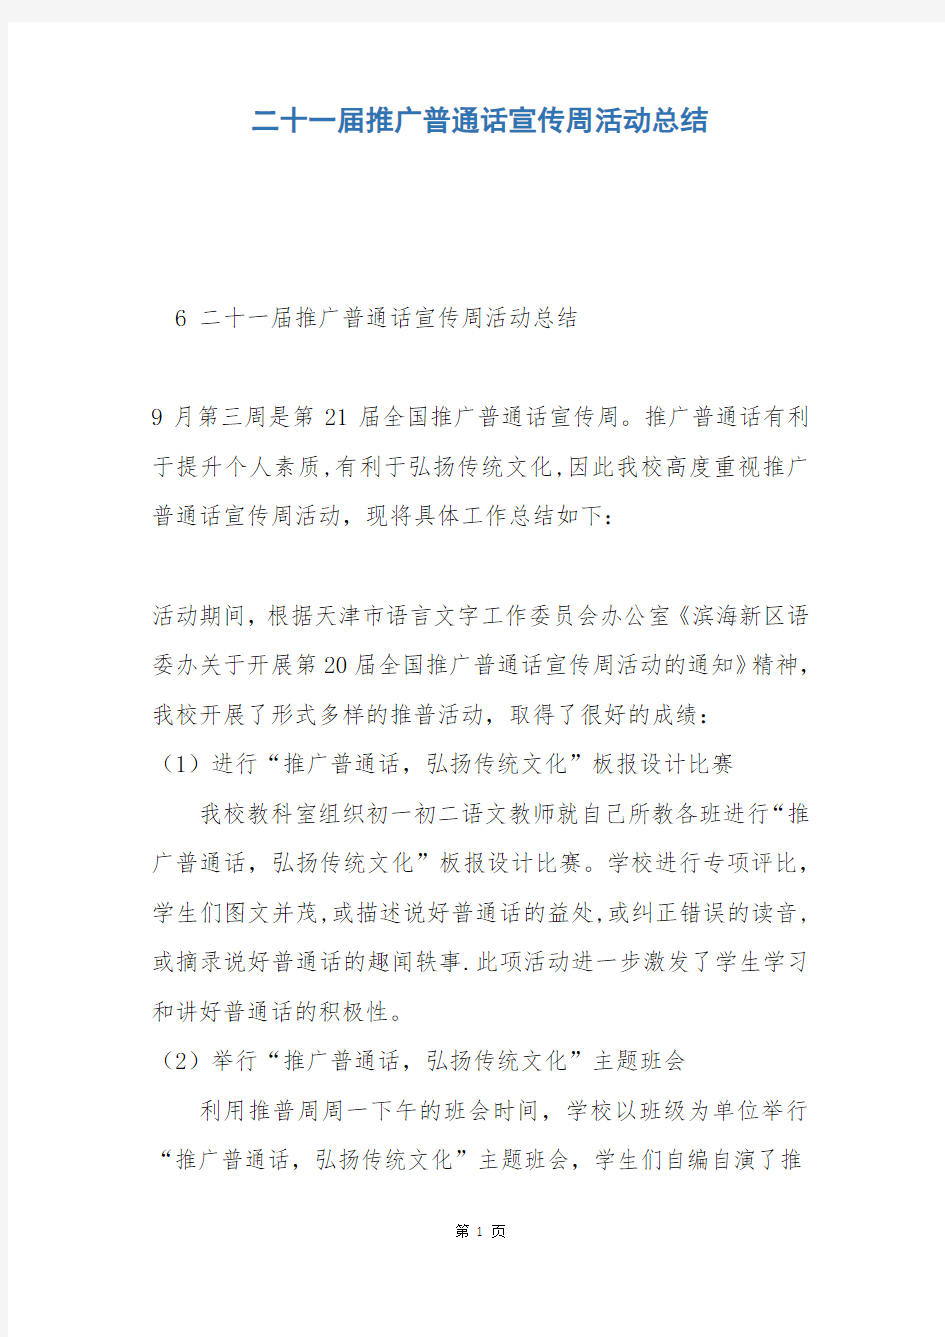 二十一届推广普通话宣传周活动总结